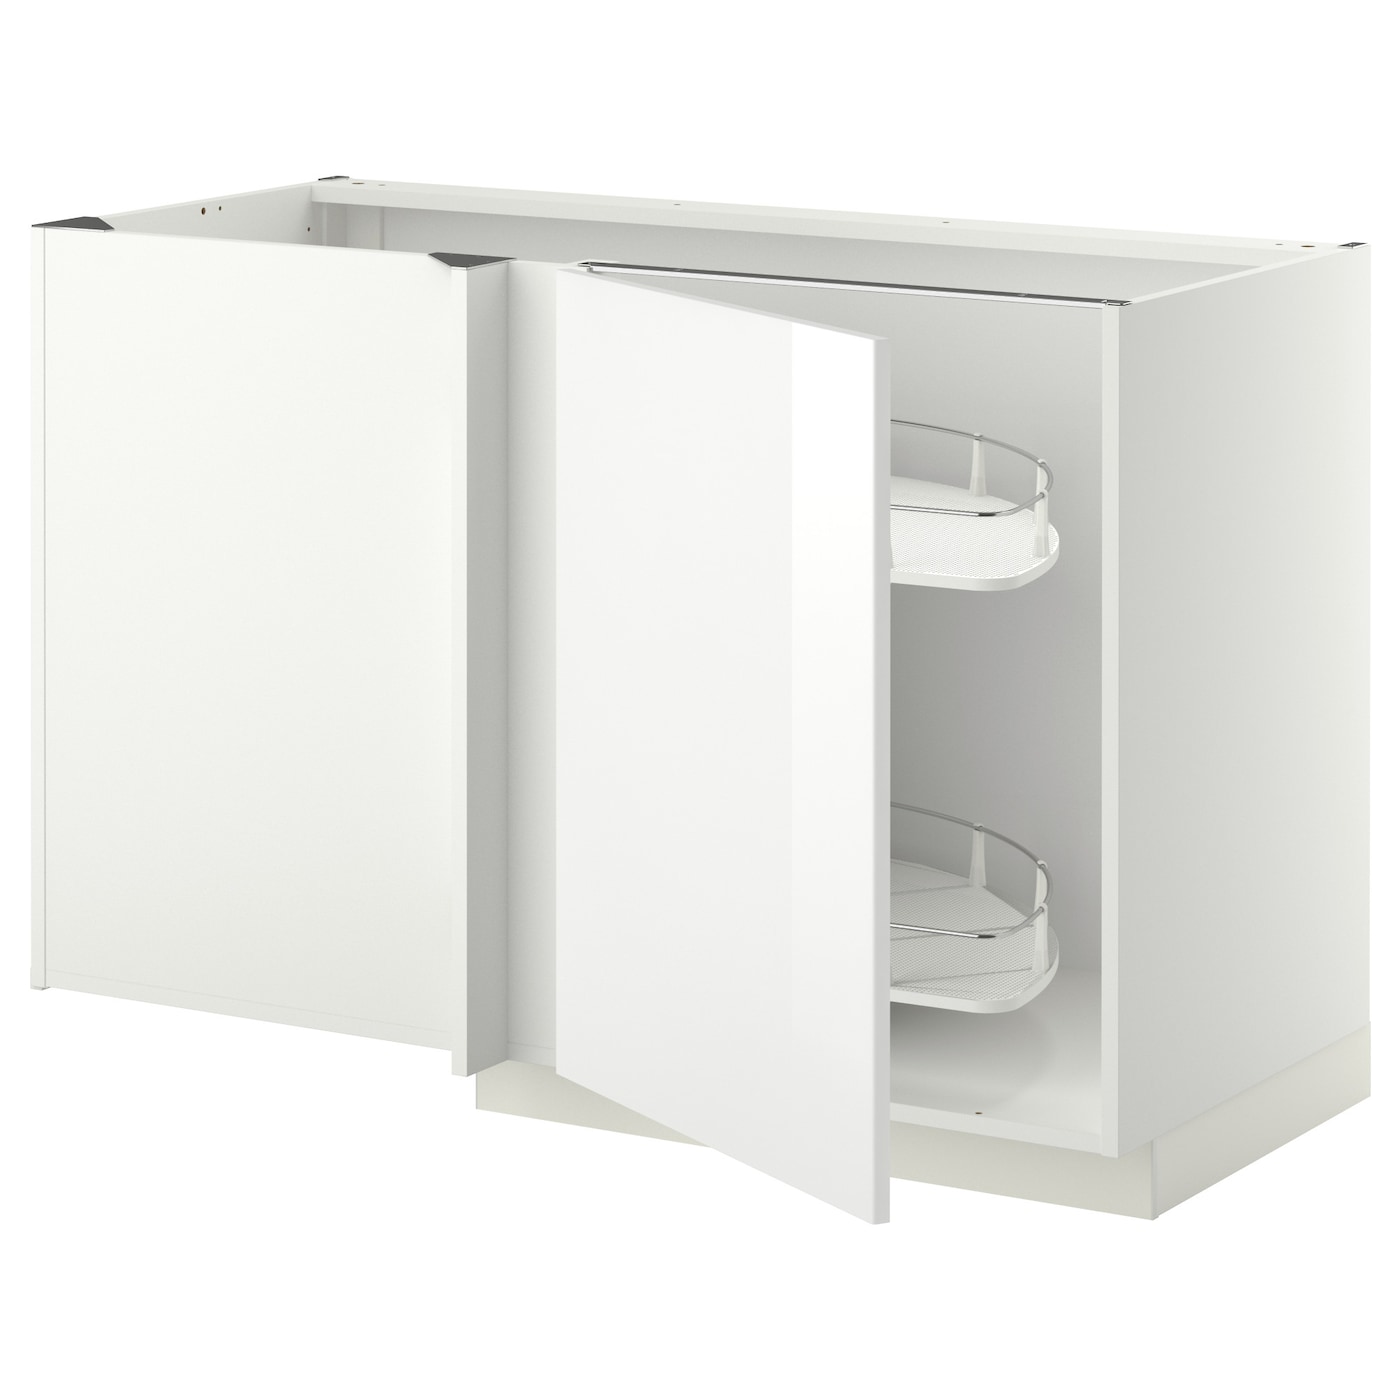 Напольный кухонный шкаф  - IKEA METOD, 88x67,5x127,5см, белый, МЕТОД ИКЕА